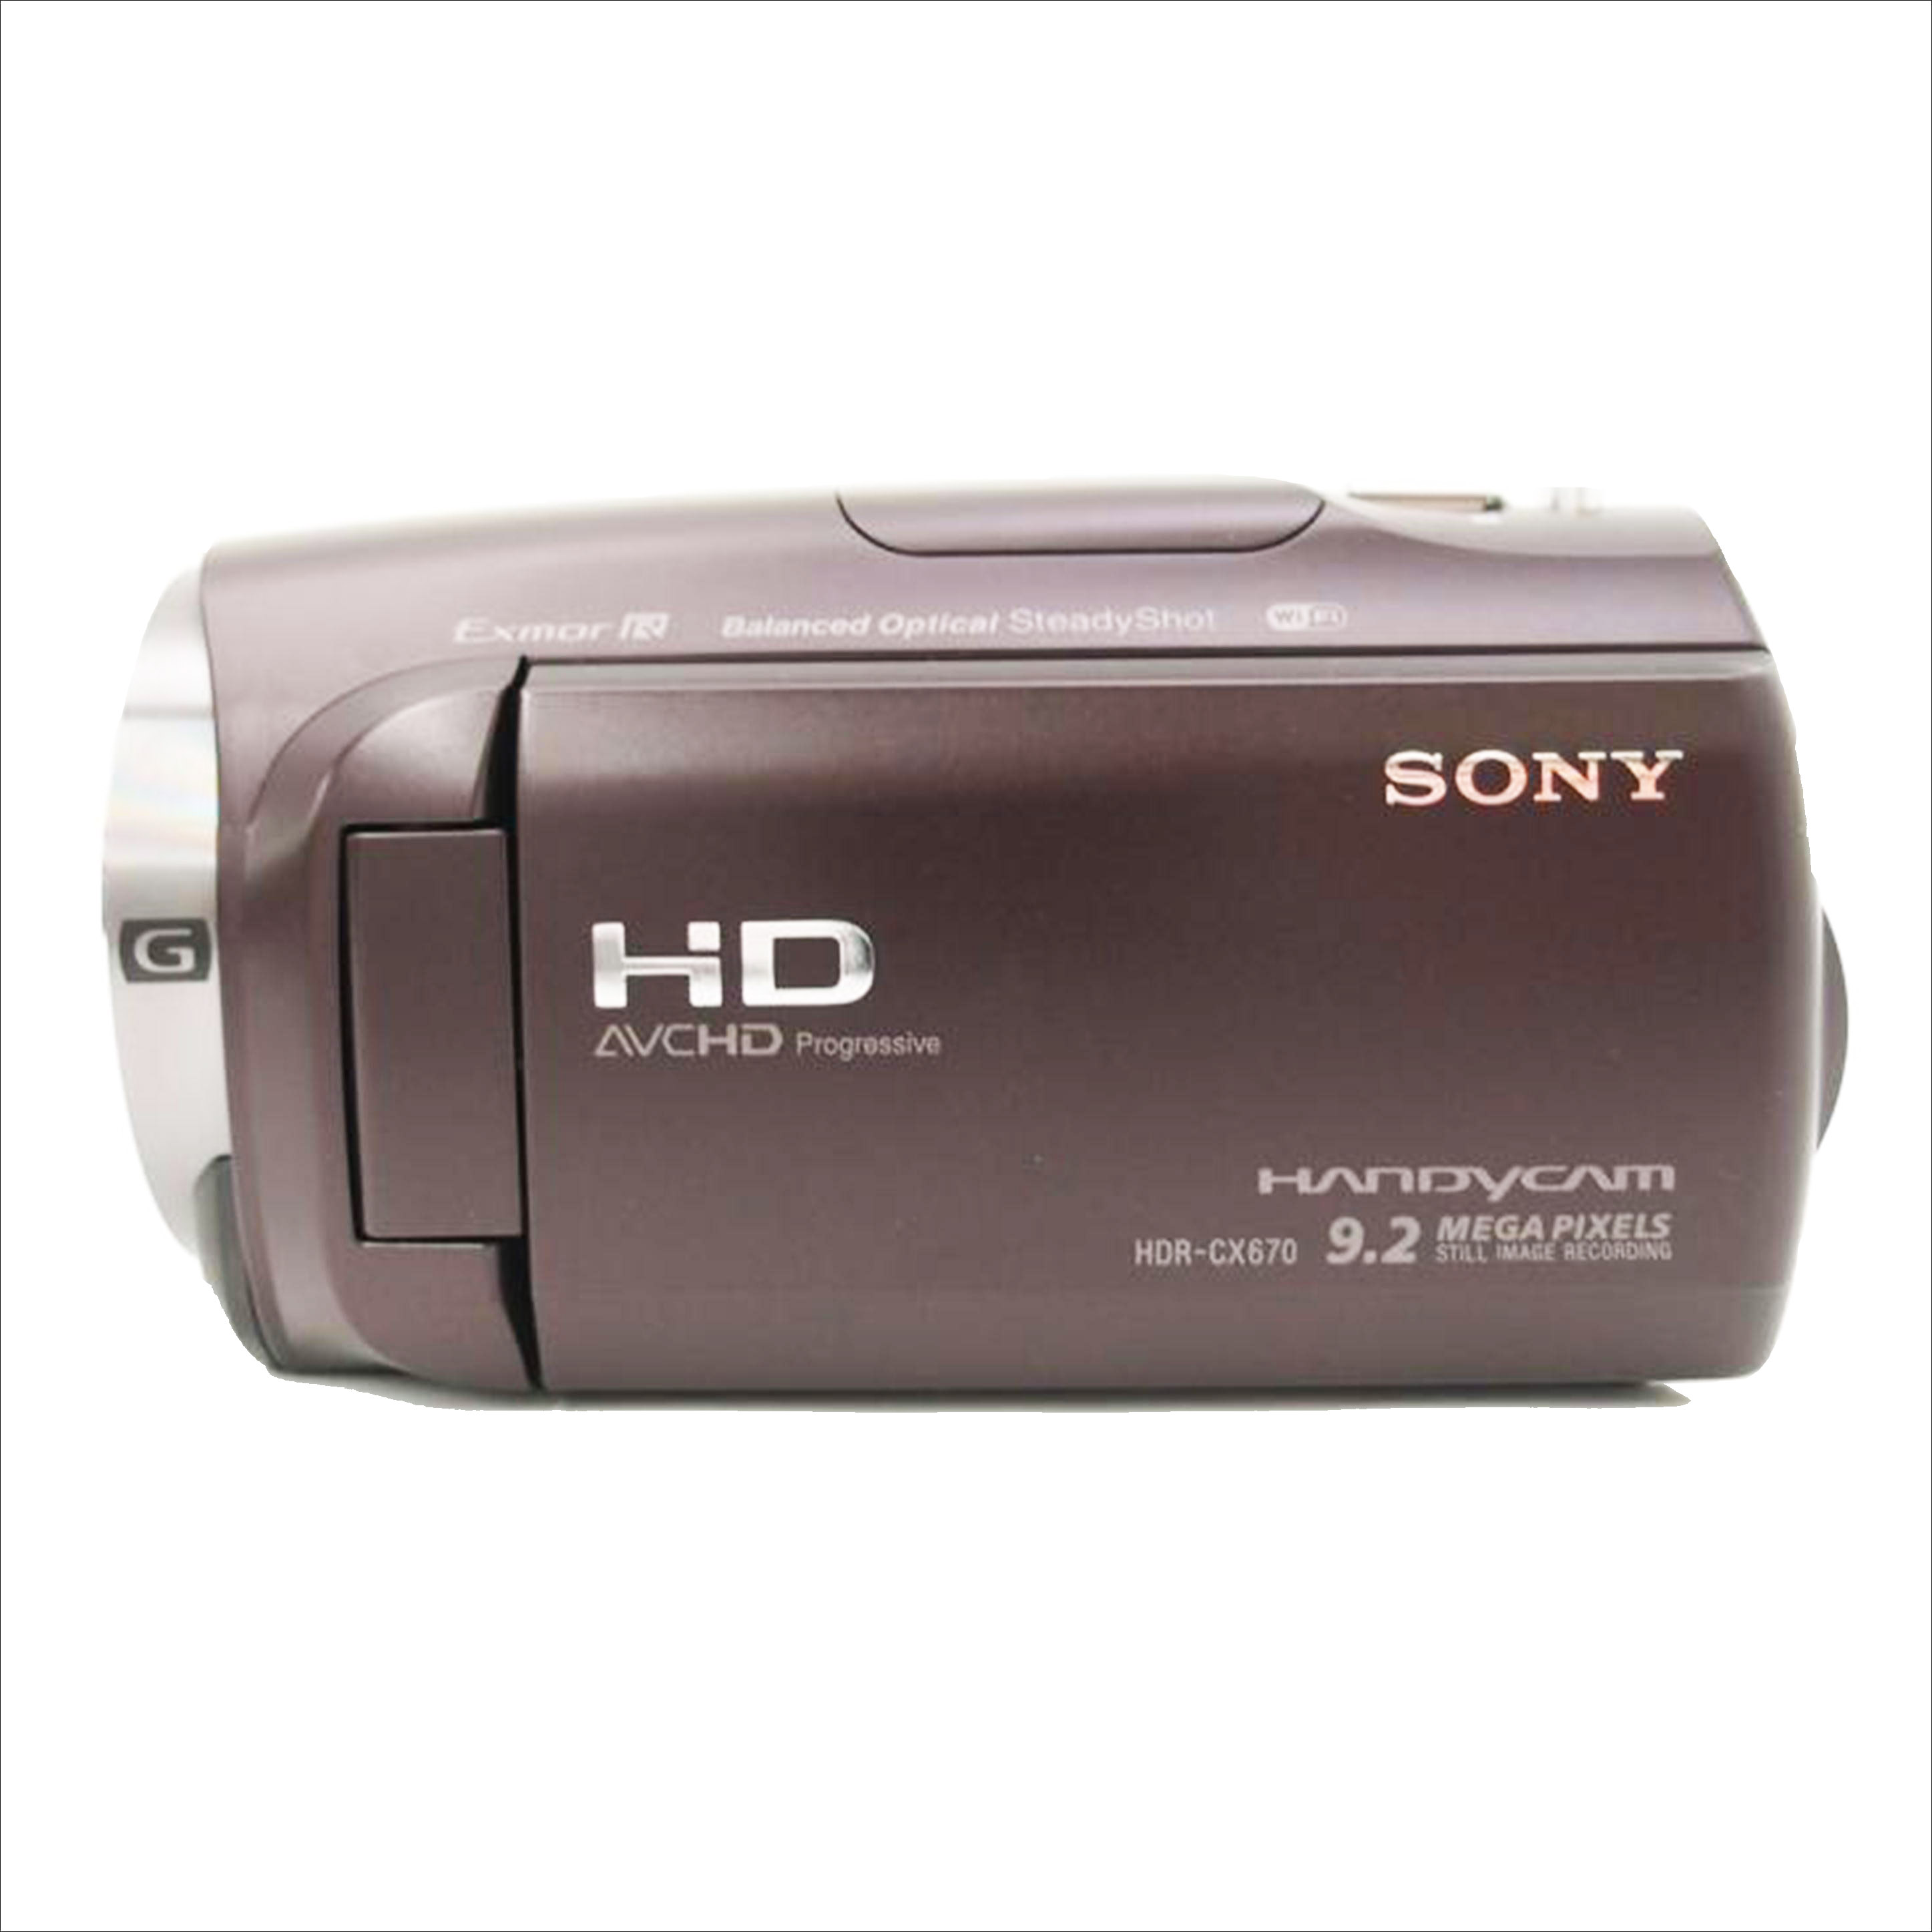 割引クーポン配布中!! SONY HDビデオカメラ Handycam HDR-CX670